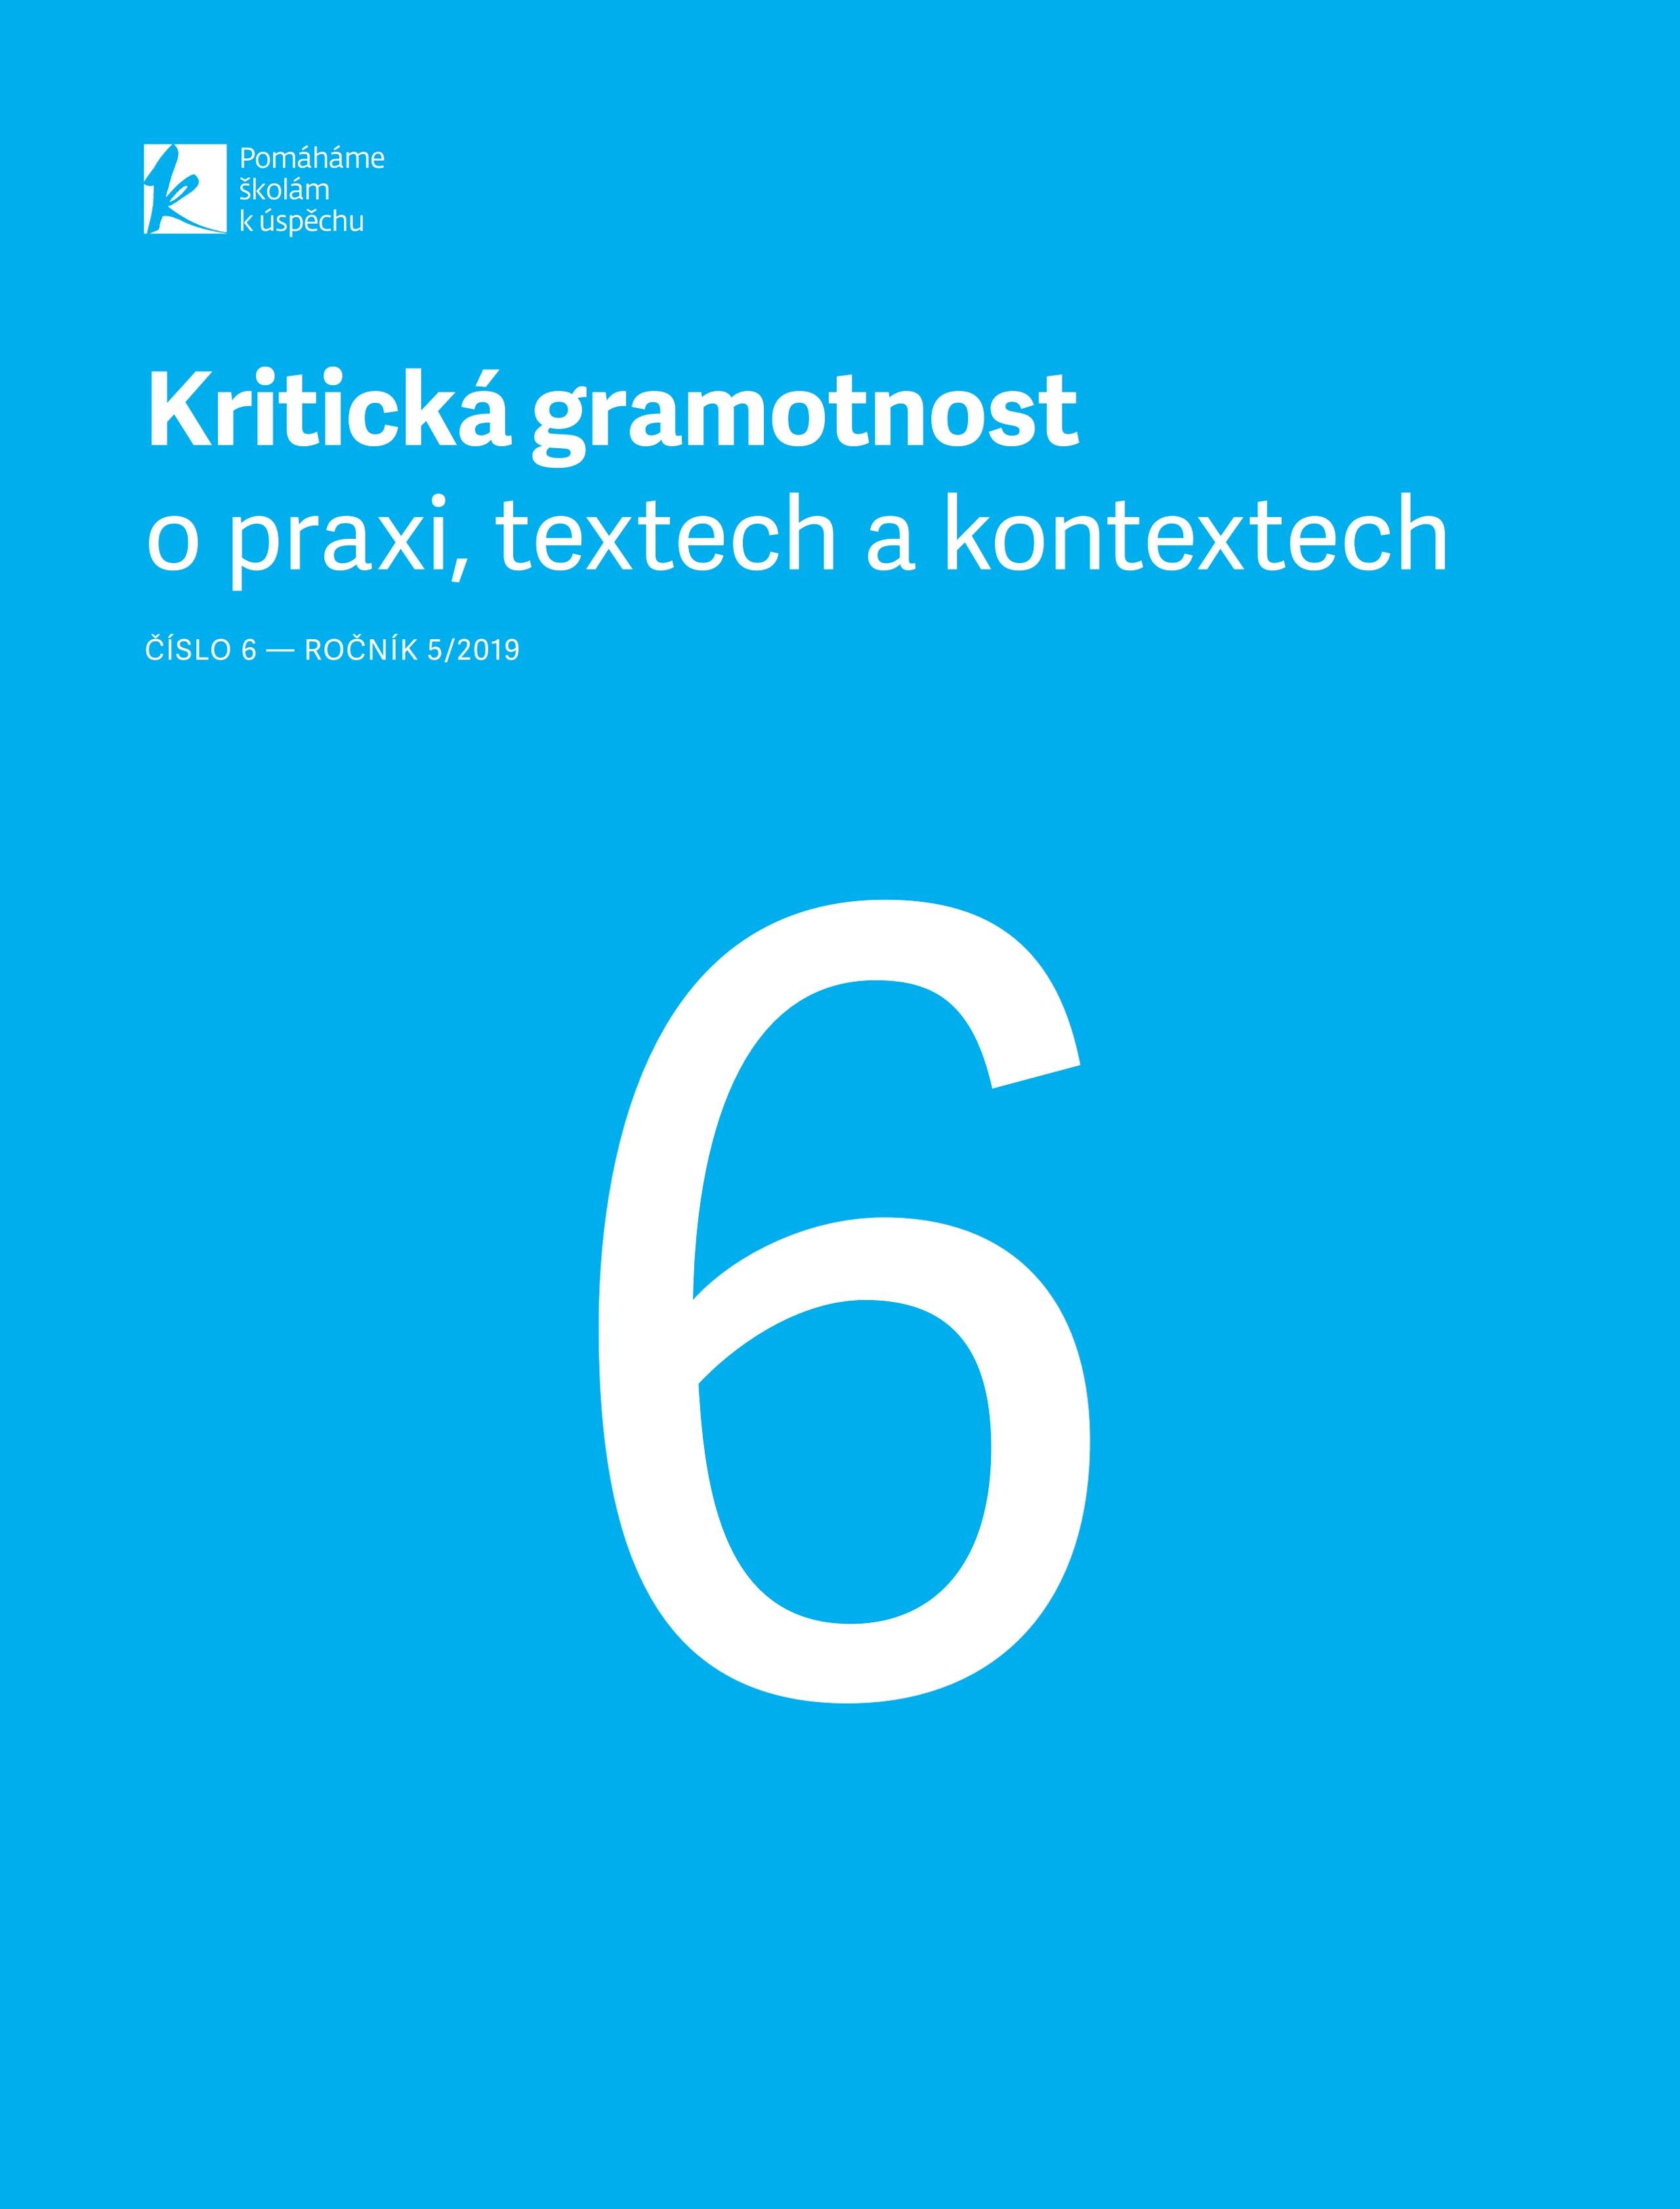 kriticka-gramotnost-6-2019.pdf